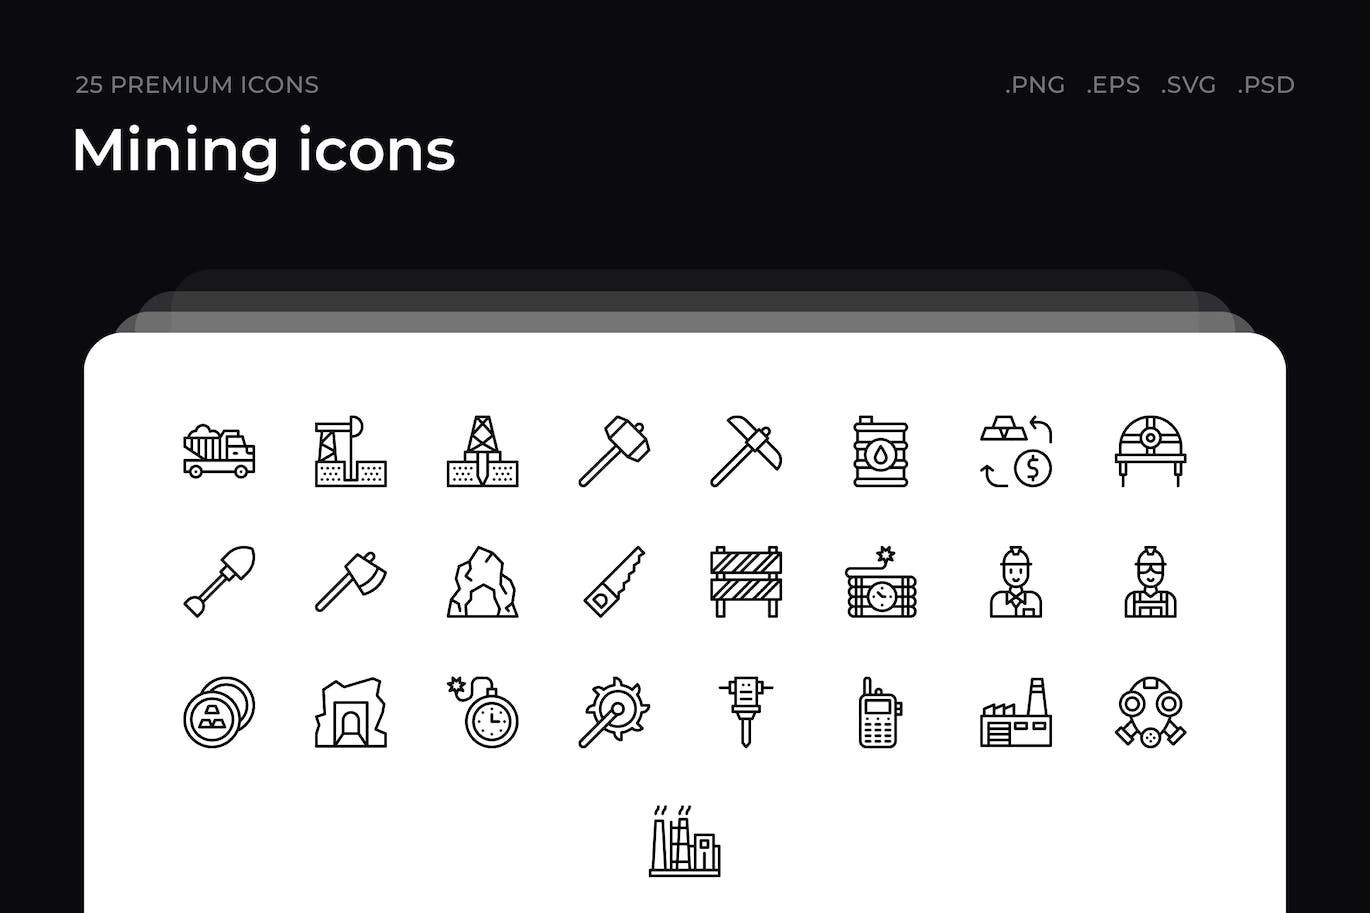 25枚采矿主题简约线条矢量图标 Mining icons 图标素材 第1张